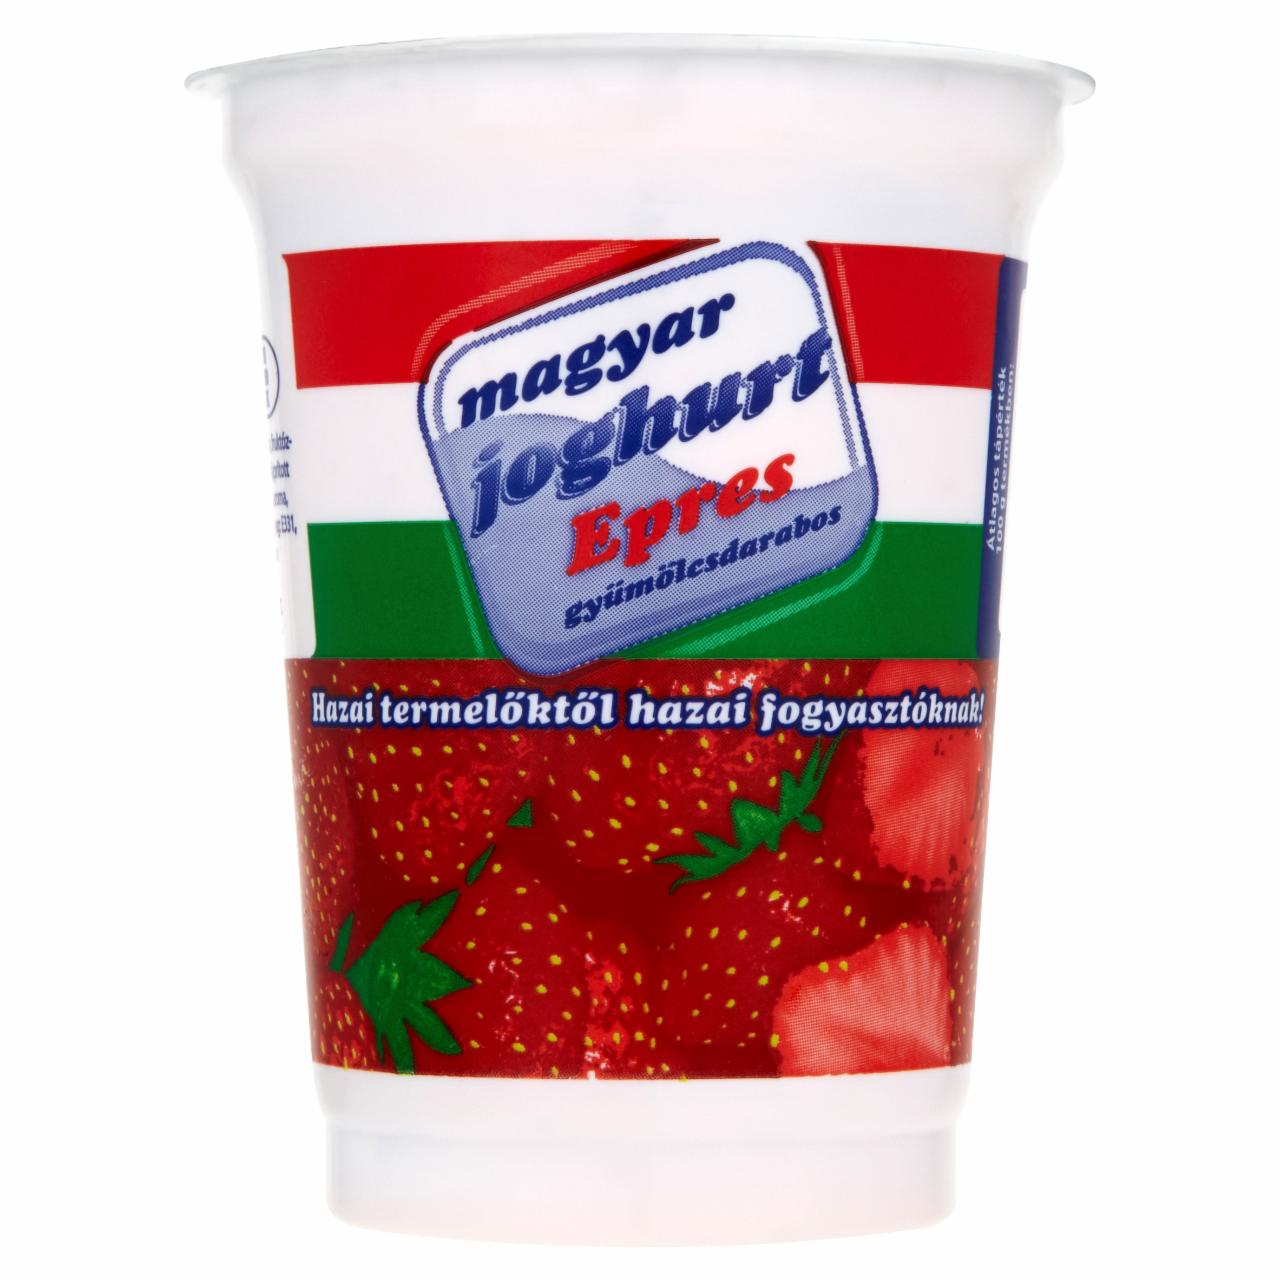 Képek - Magyar Joghurt epres gyümölcsdarabos joghurt 450 g